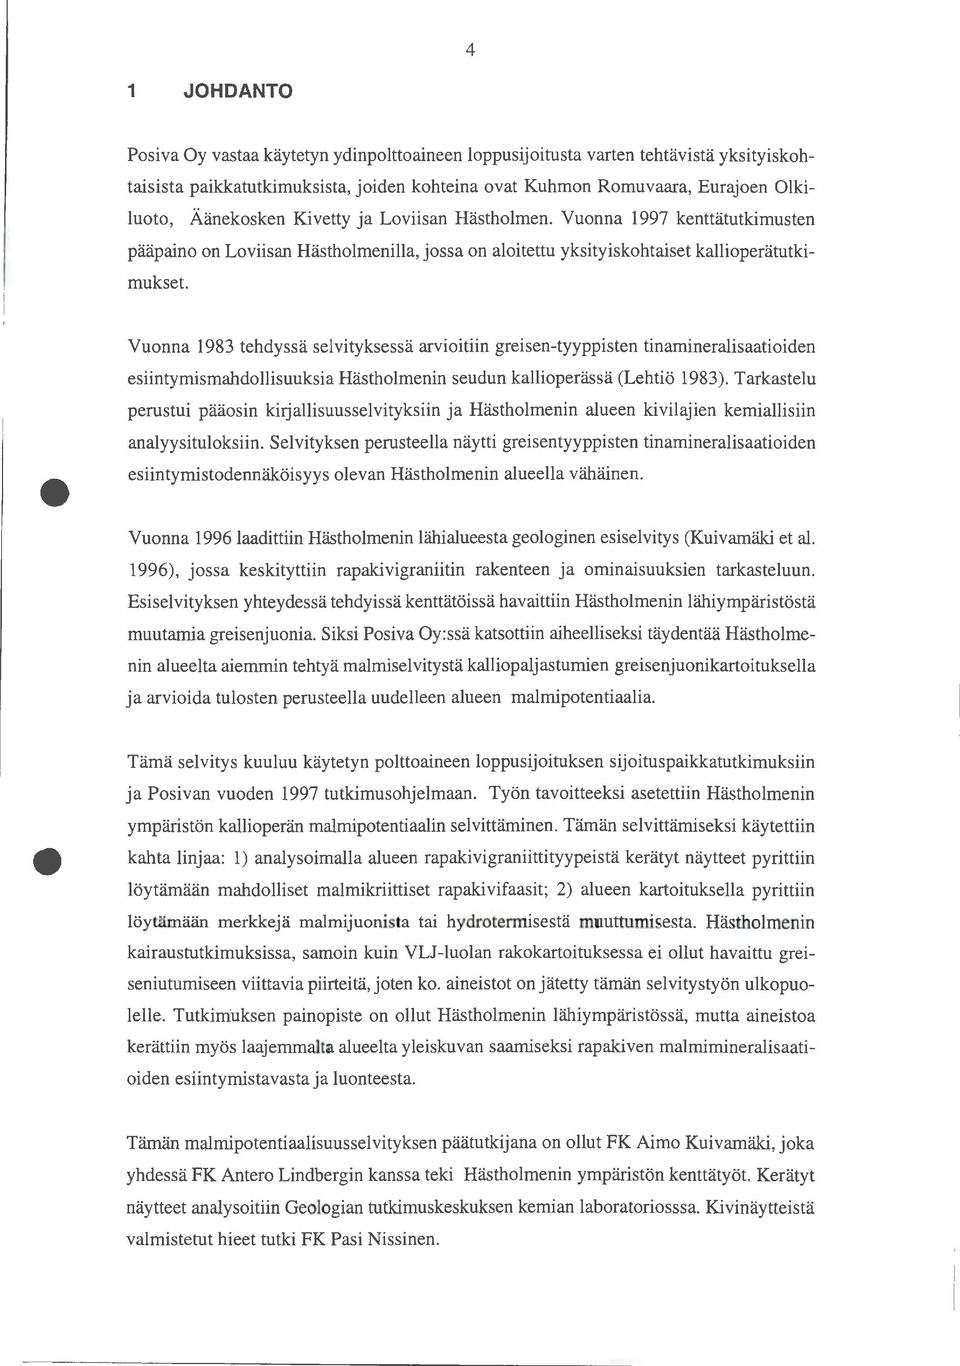 Vuonna 1997 kenttätutkimusten pääpaino on Loviisan Hästholmenilla, jossa on aloitettu yksityiskohtaiset kallioperätutkimukset Vuonna 1983 tehdyssä selvityksessä arvioitiin greisen-tyyppisten